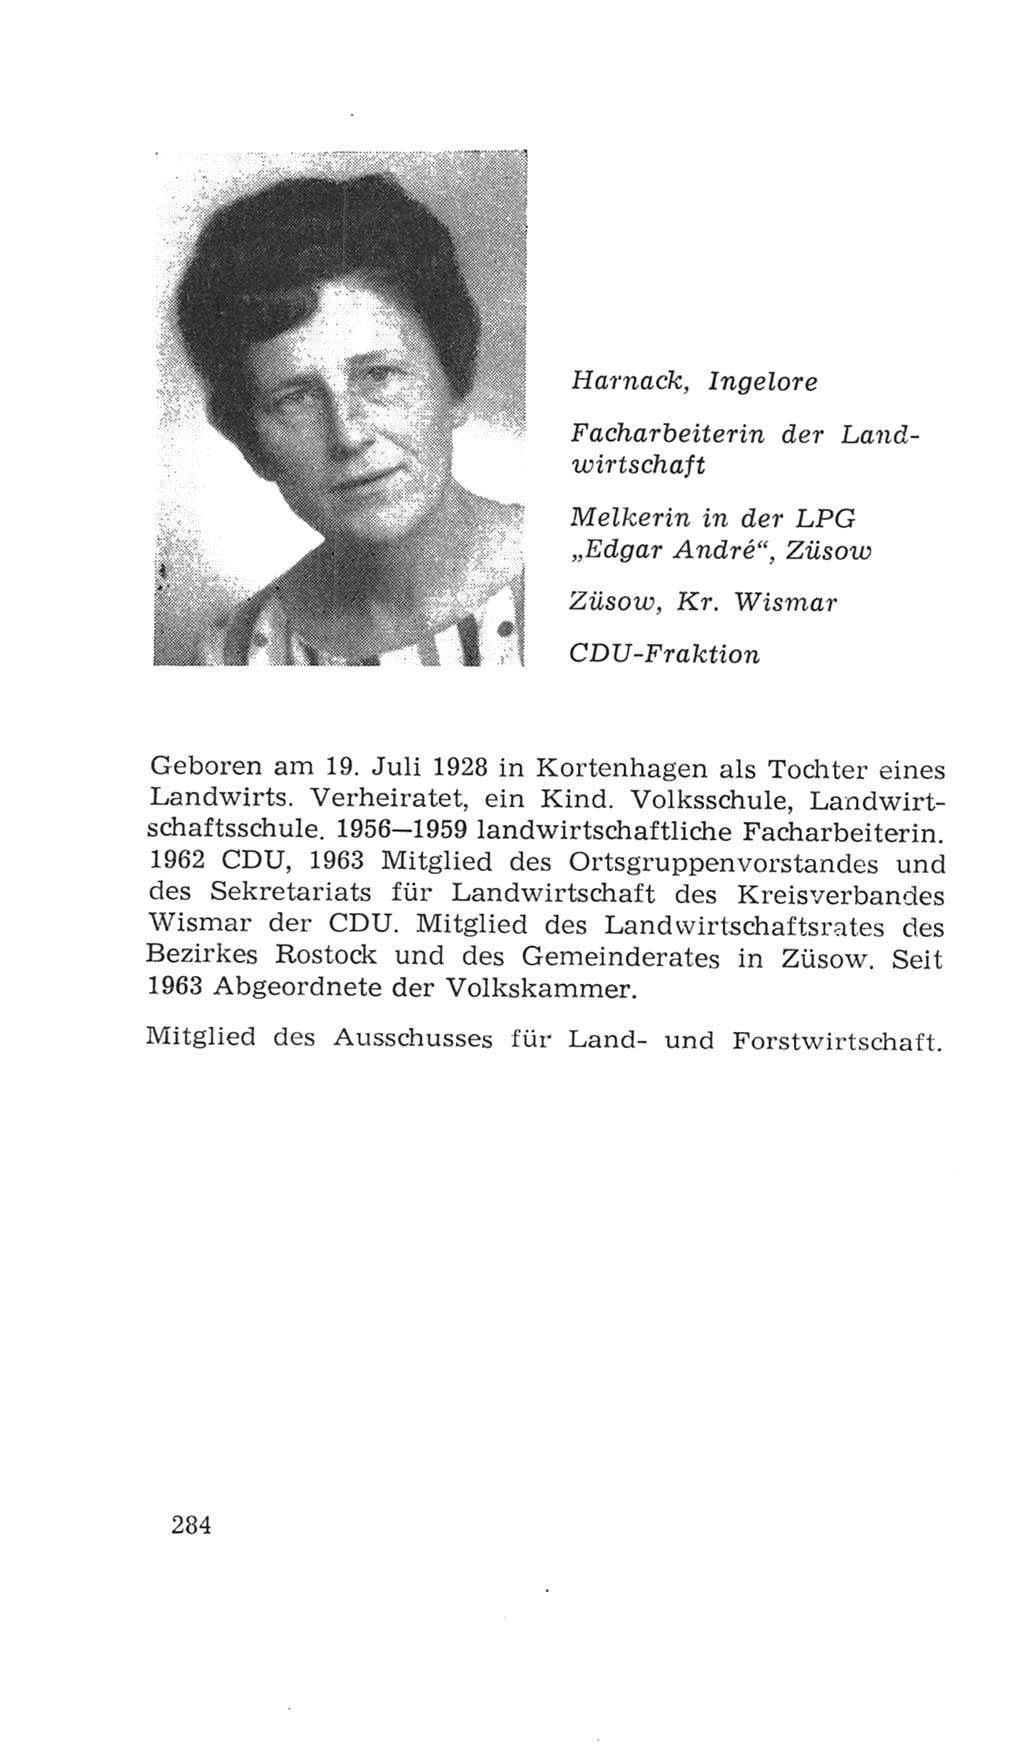 Volkskammer (VK) der Deutschen Demokratischen Republik (DDR), 4. Wahlperiode 1963-1967, Seite 284 (VK. DDR 4. WP. 1963-1967, S. 284)